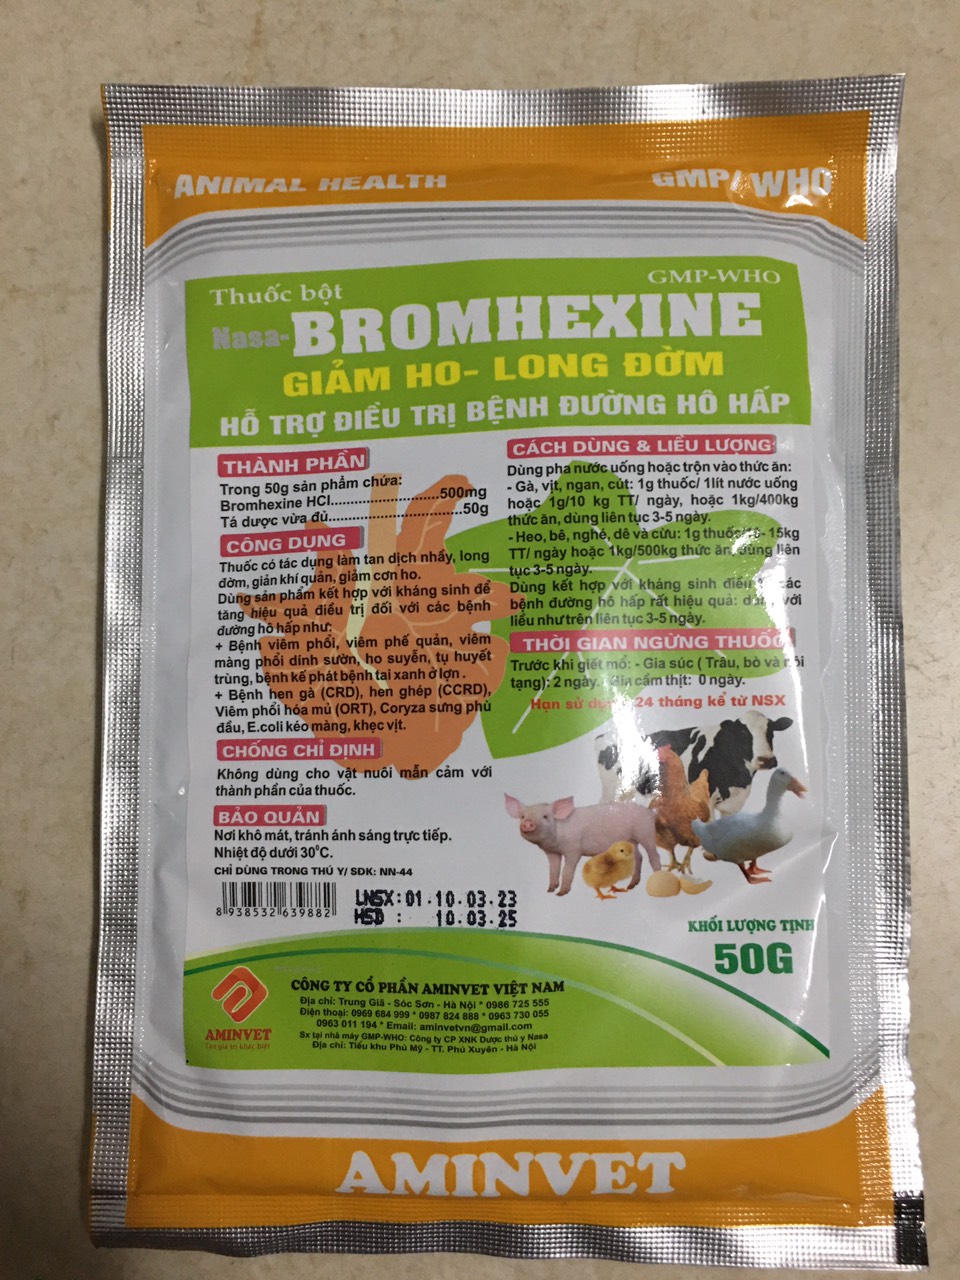 Brom/bromhexine hen 50g giảm ho, long đờm, hỗ trợ xử lý hen, khẹc, viêm phổi cho chó, mèo, gia súc, gia cầm